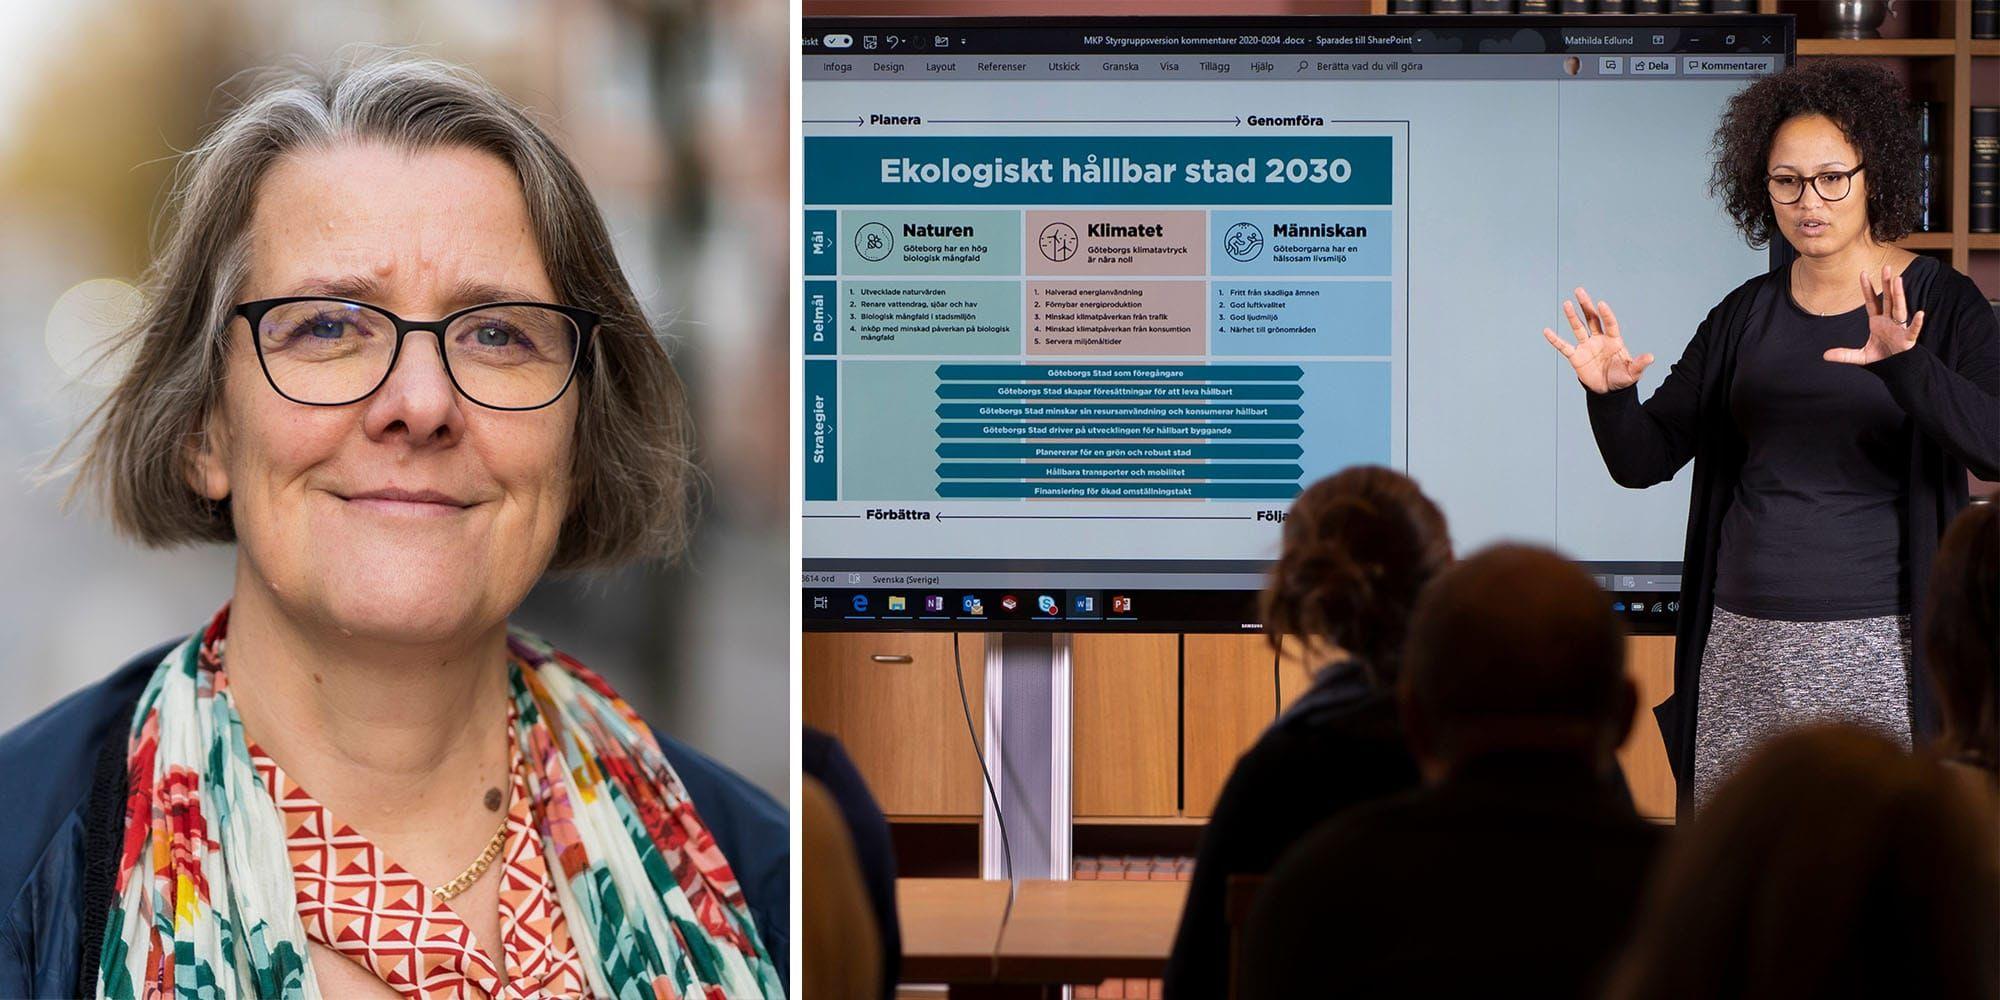 Henriette Söderberg och Mathilda Edlund på miljöförvaltningen arbetar med att genomföra Göteborgs nya miljö- och klimatprogram. Foto: Ulrik Fallström.